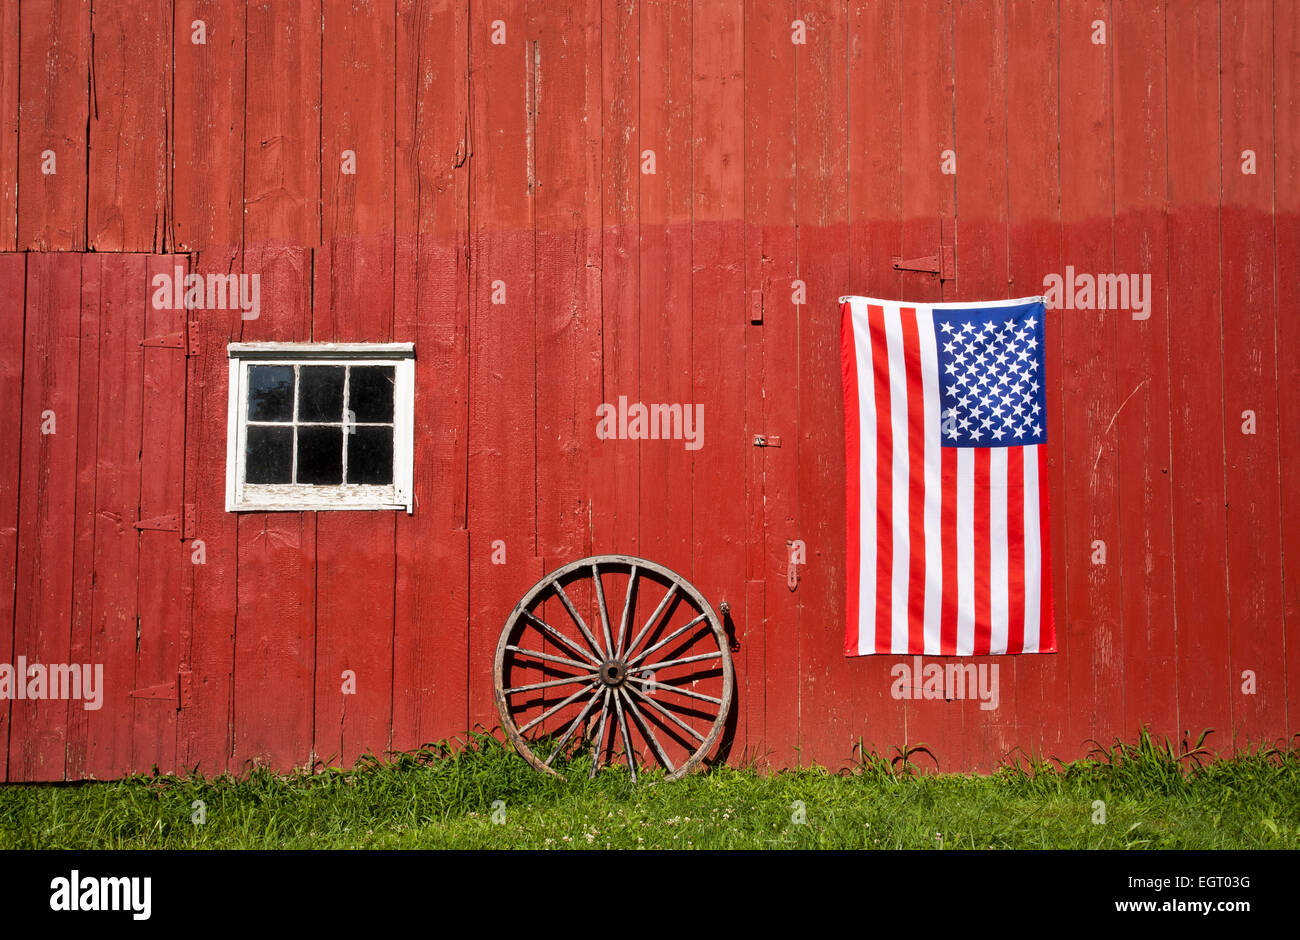 Storico granaio rosso, bandiera degli Stati Uniti e un'antica ruota del carro in una fattoria, Middlesex County, Monroe Twp., New Jersey, USA, Americano 10,38 MB, Dt ago 2013 Foto Stock